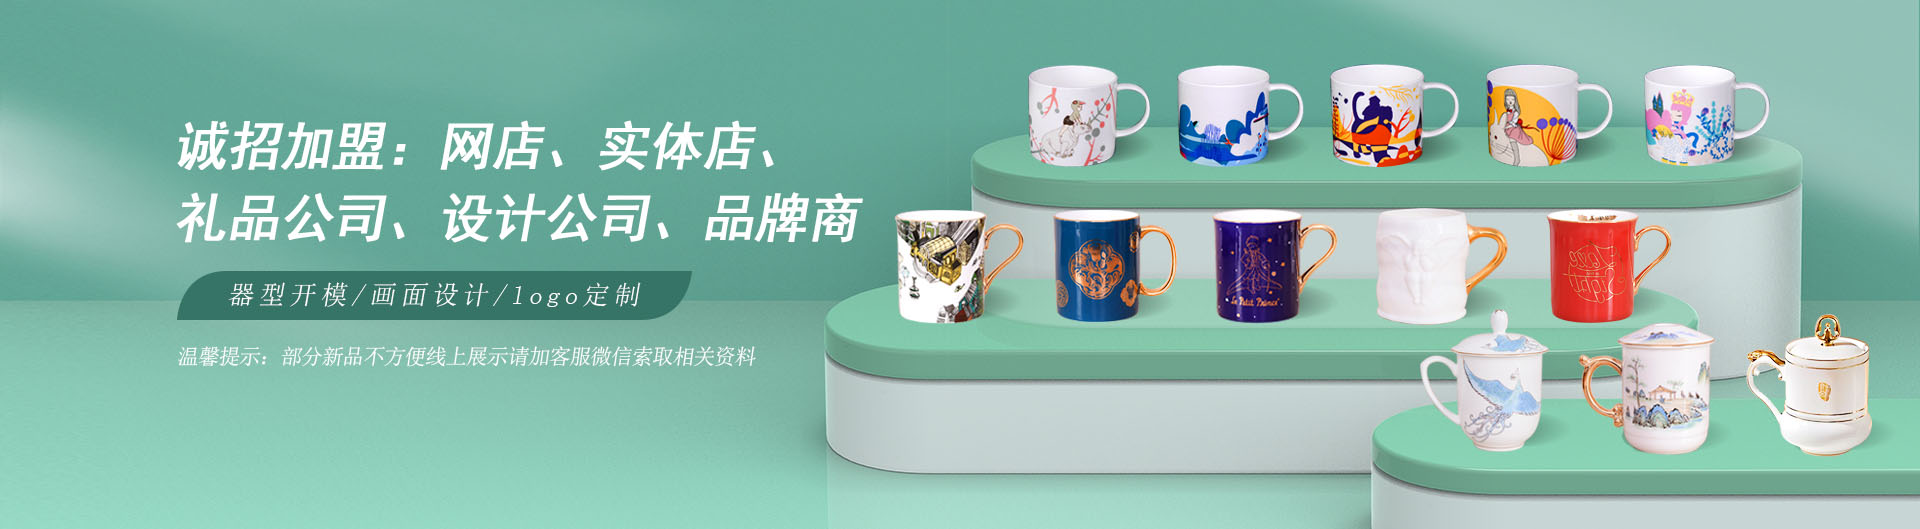 陶瓷杯,马克杯,55世纪
餐具定制,骨质瓷广告杯定做厂家-唐山55世纪
陶瓷